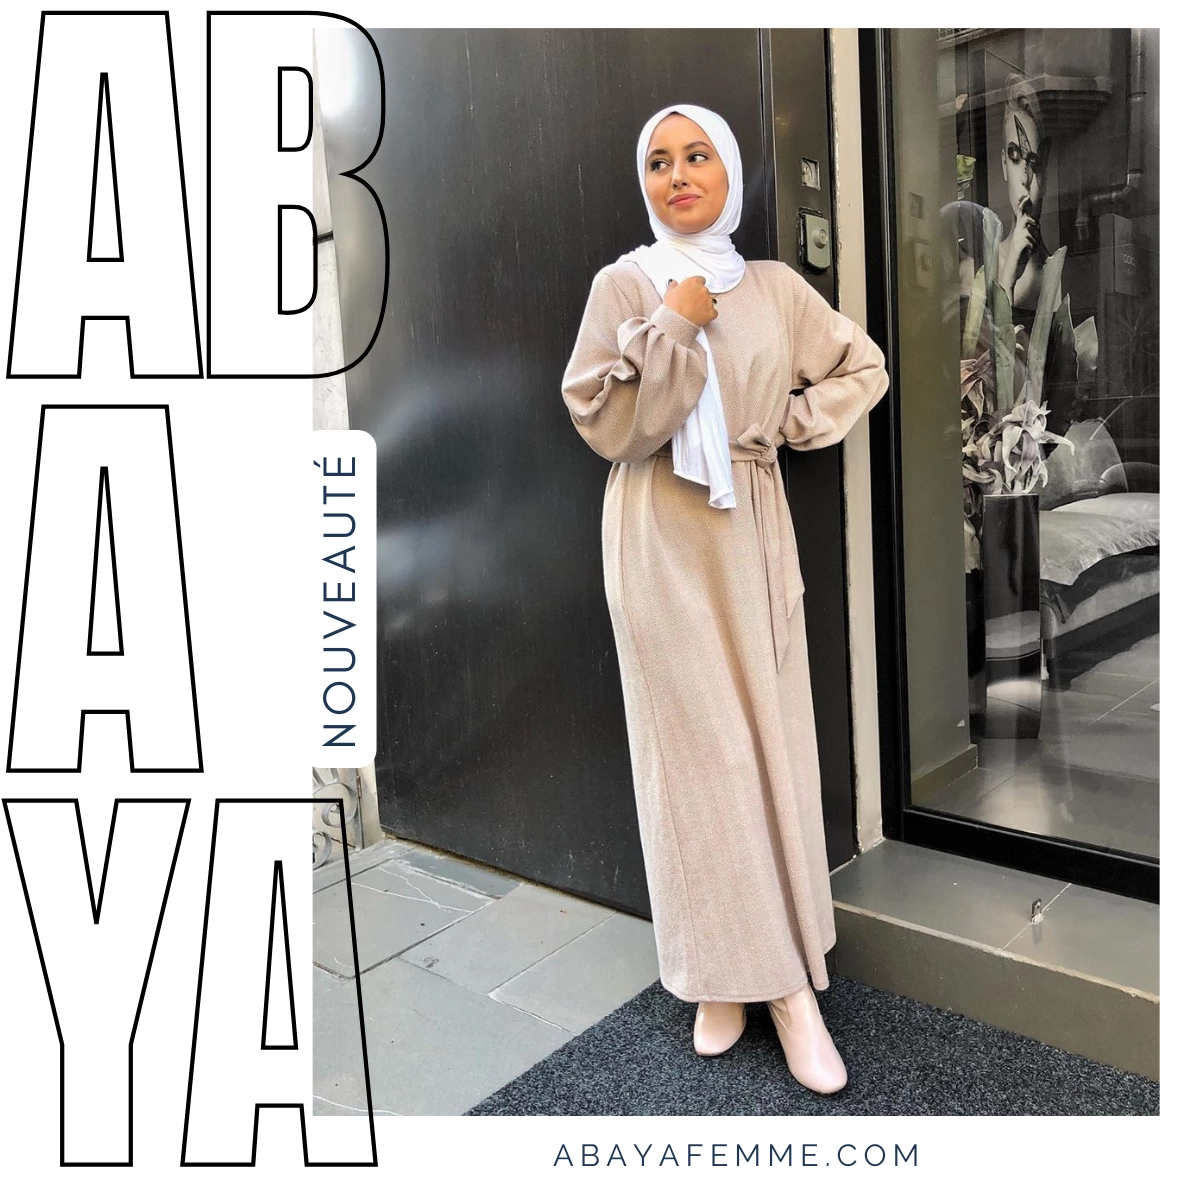 Abaya c'est quoi?